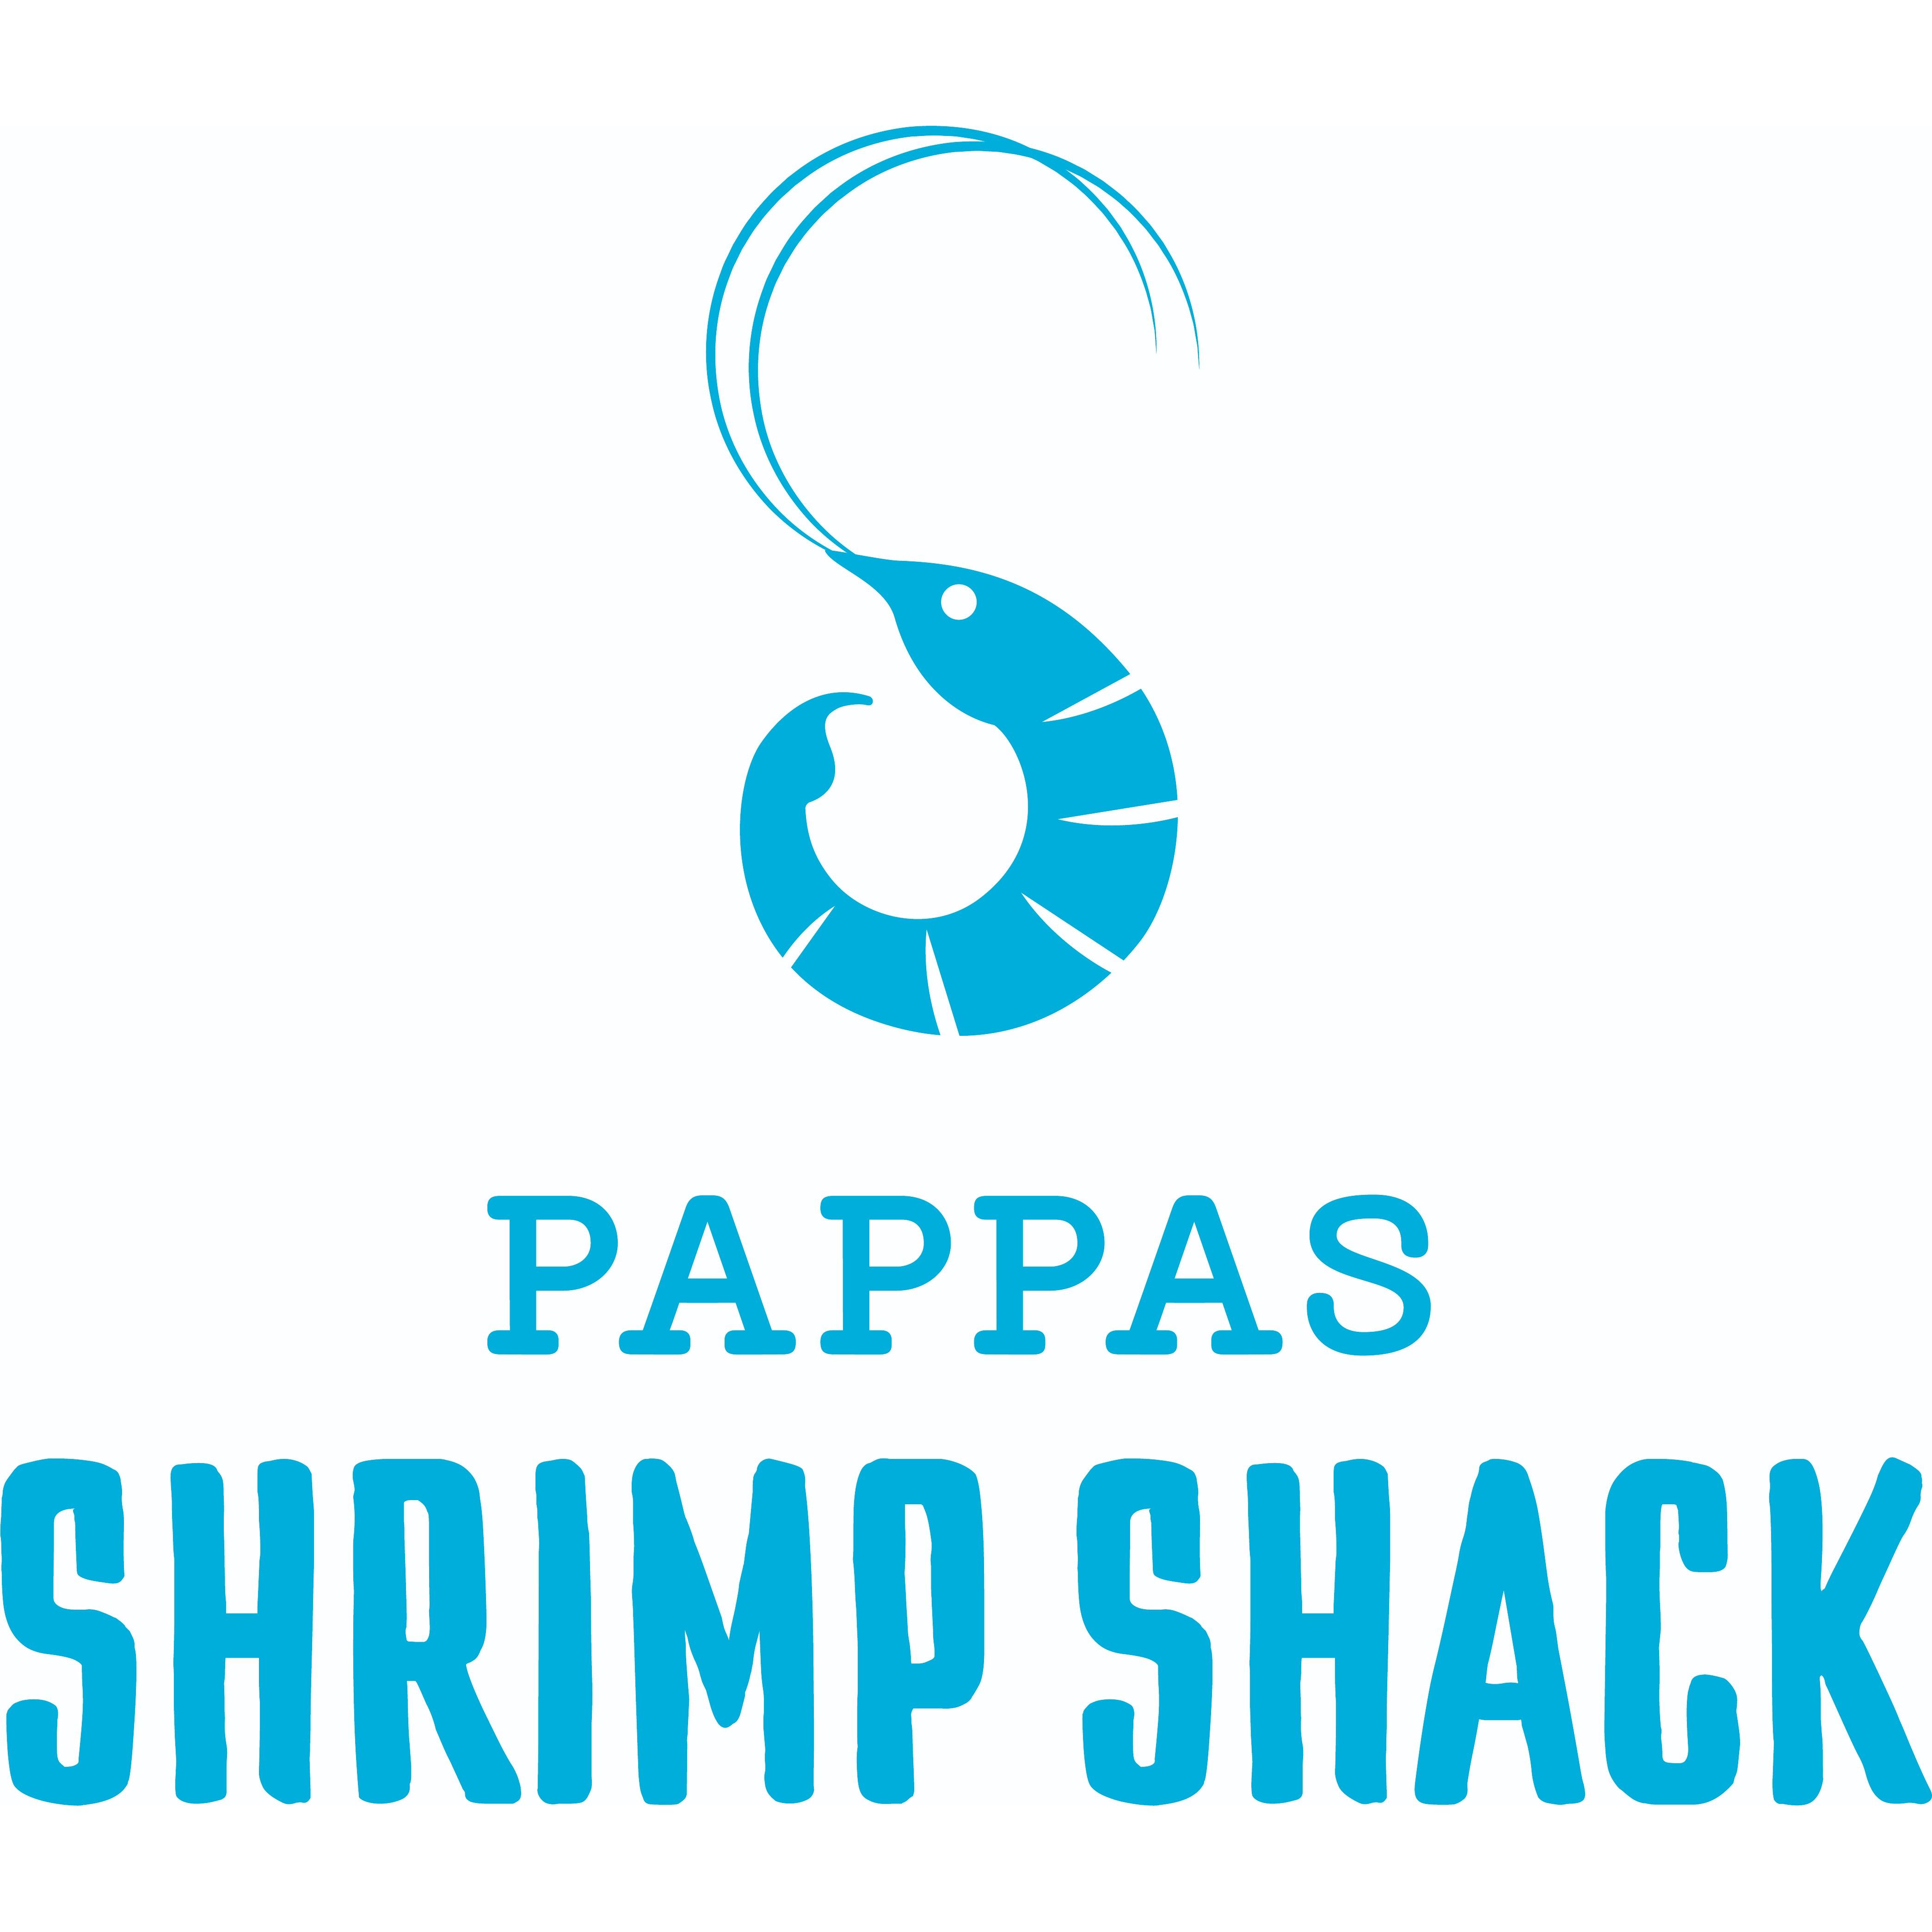 Pappas Shrimp Shack - Houston, TX 77087 - (713)641-0318 | ShowMeLocal.com